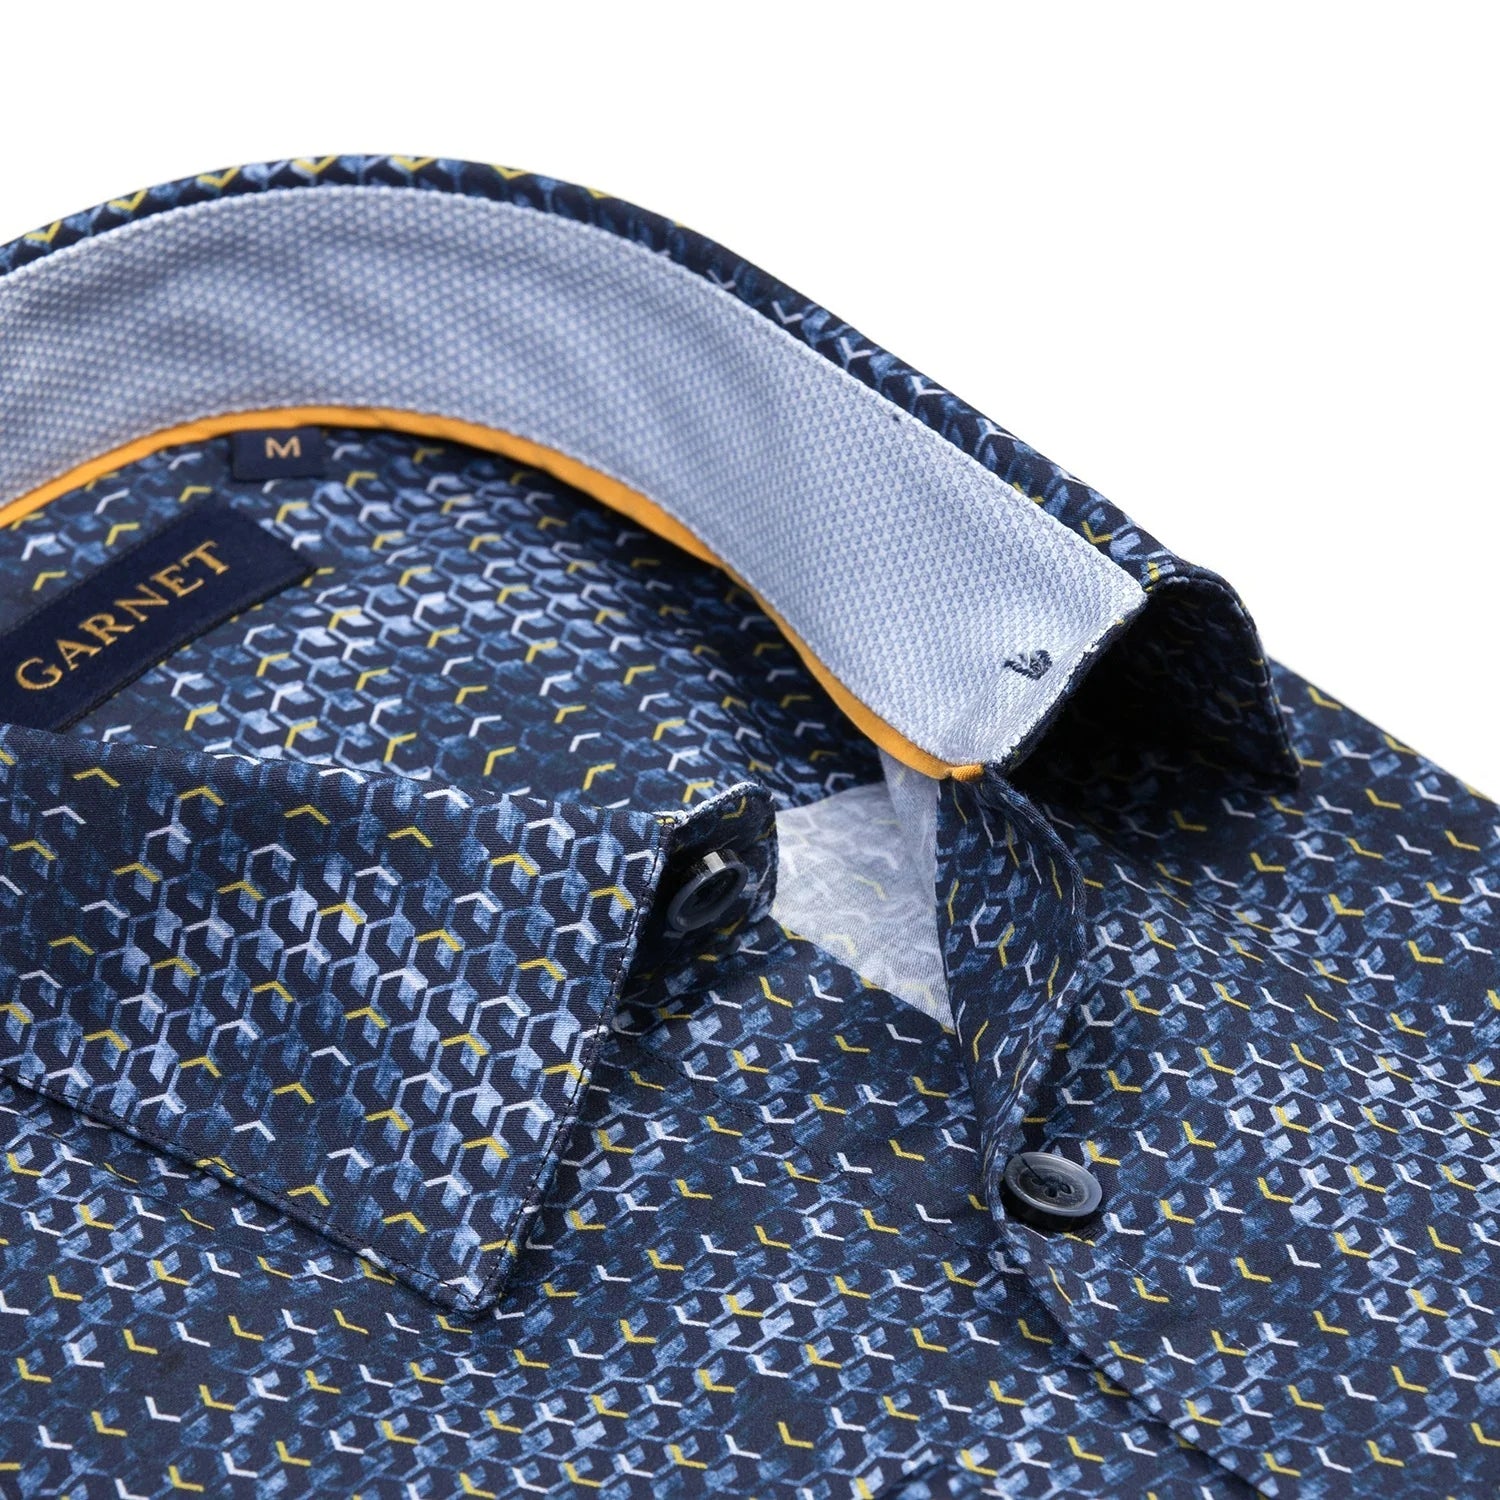 Garnet Honeycomb Printed  Long Sleeve Button Up Shirt